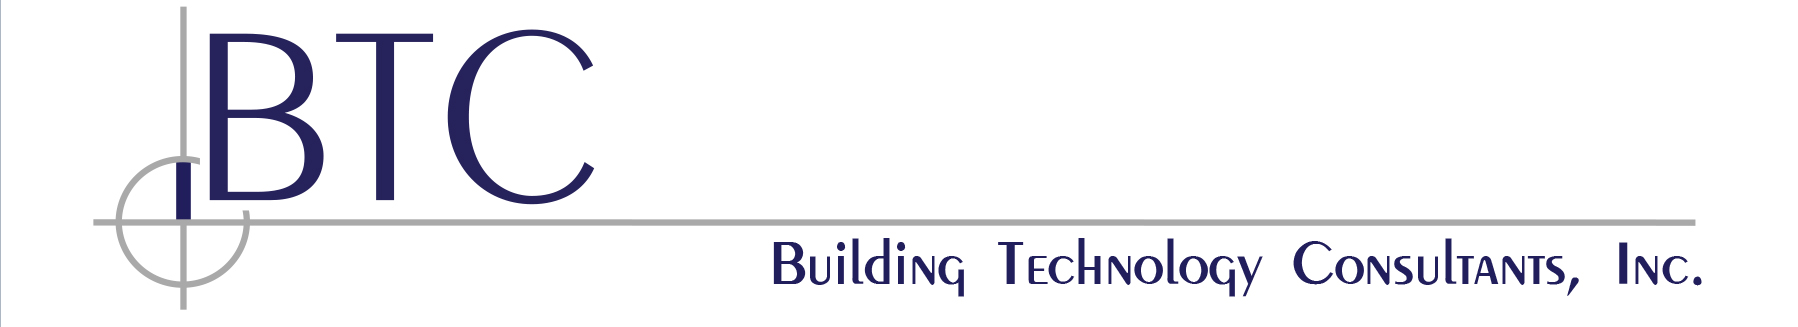 BTC - Building Technology Consultants, Inc.